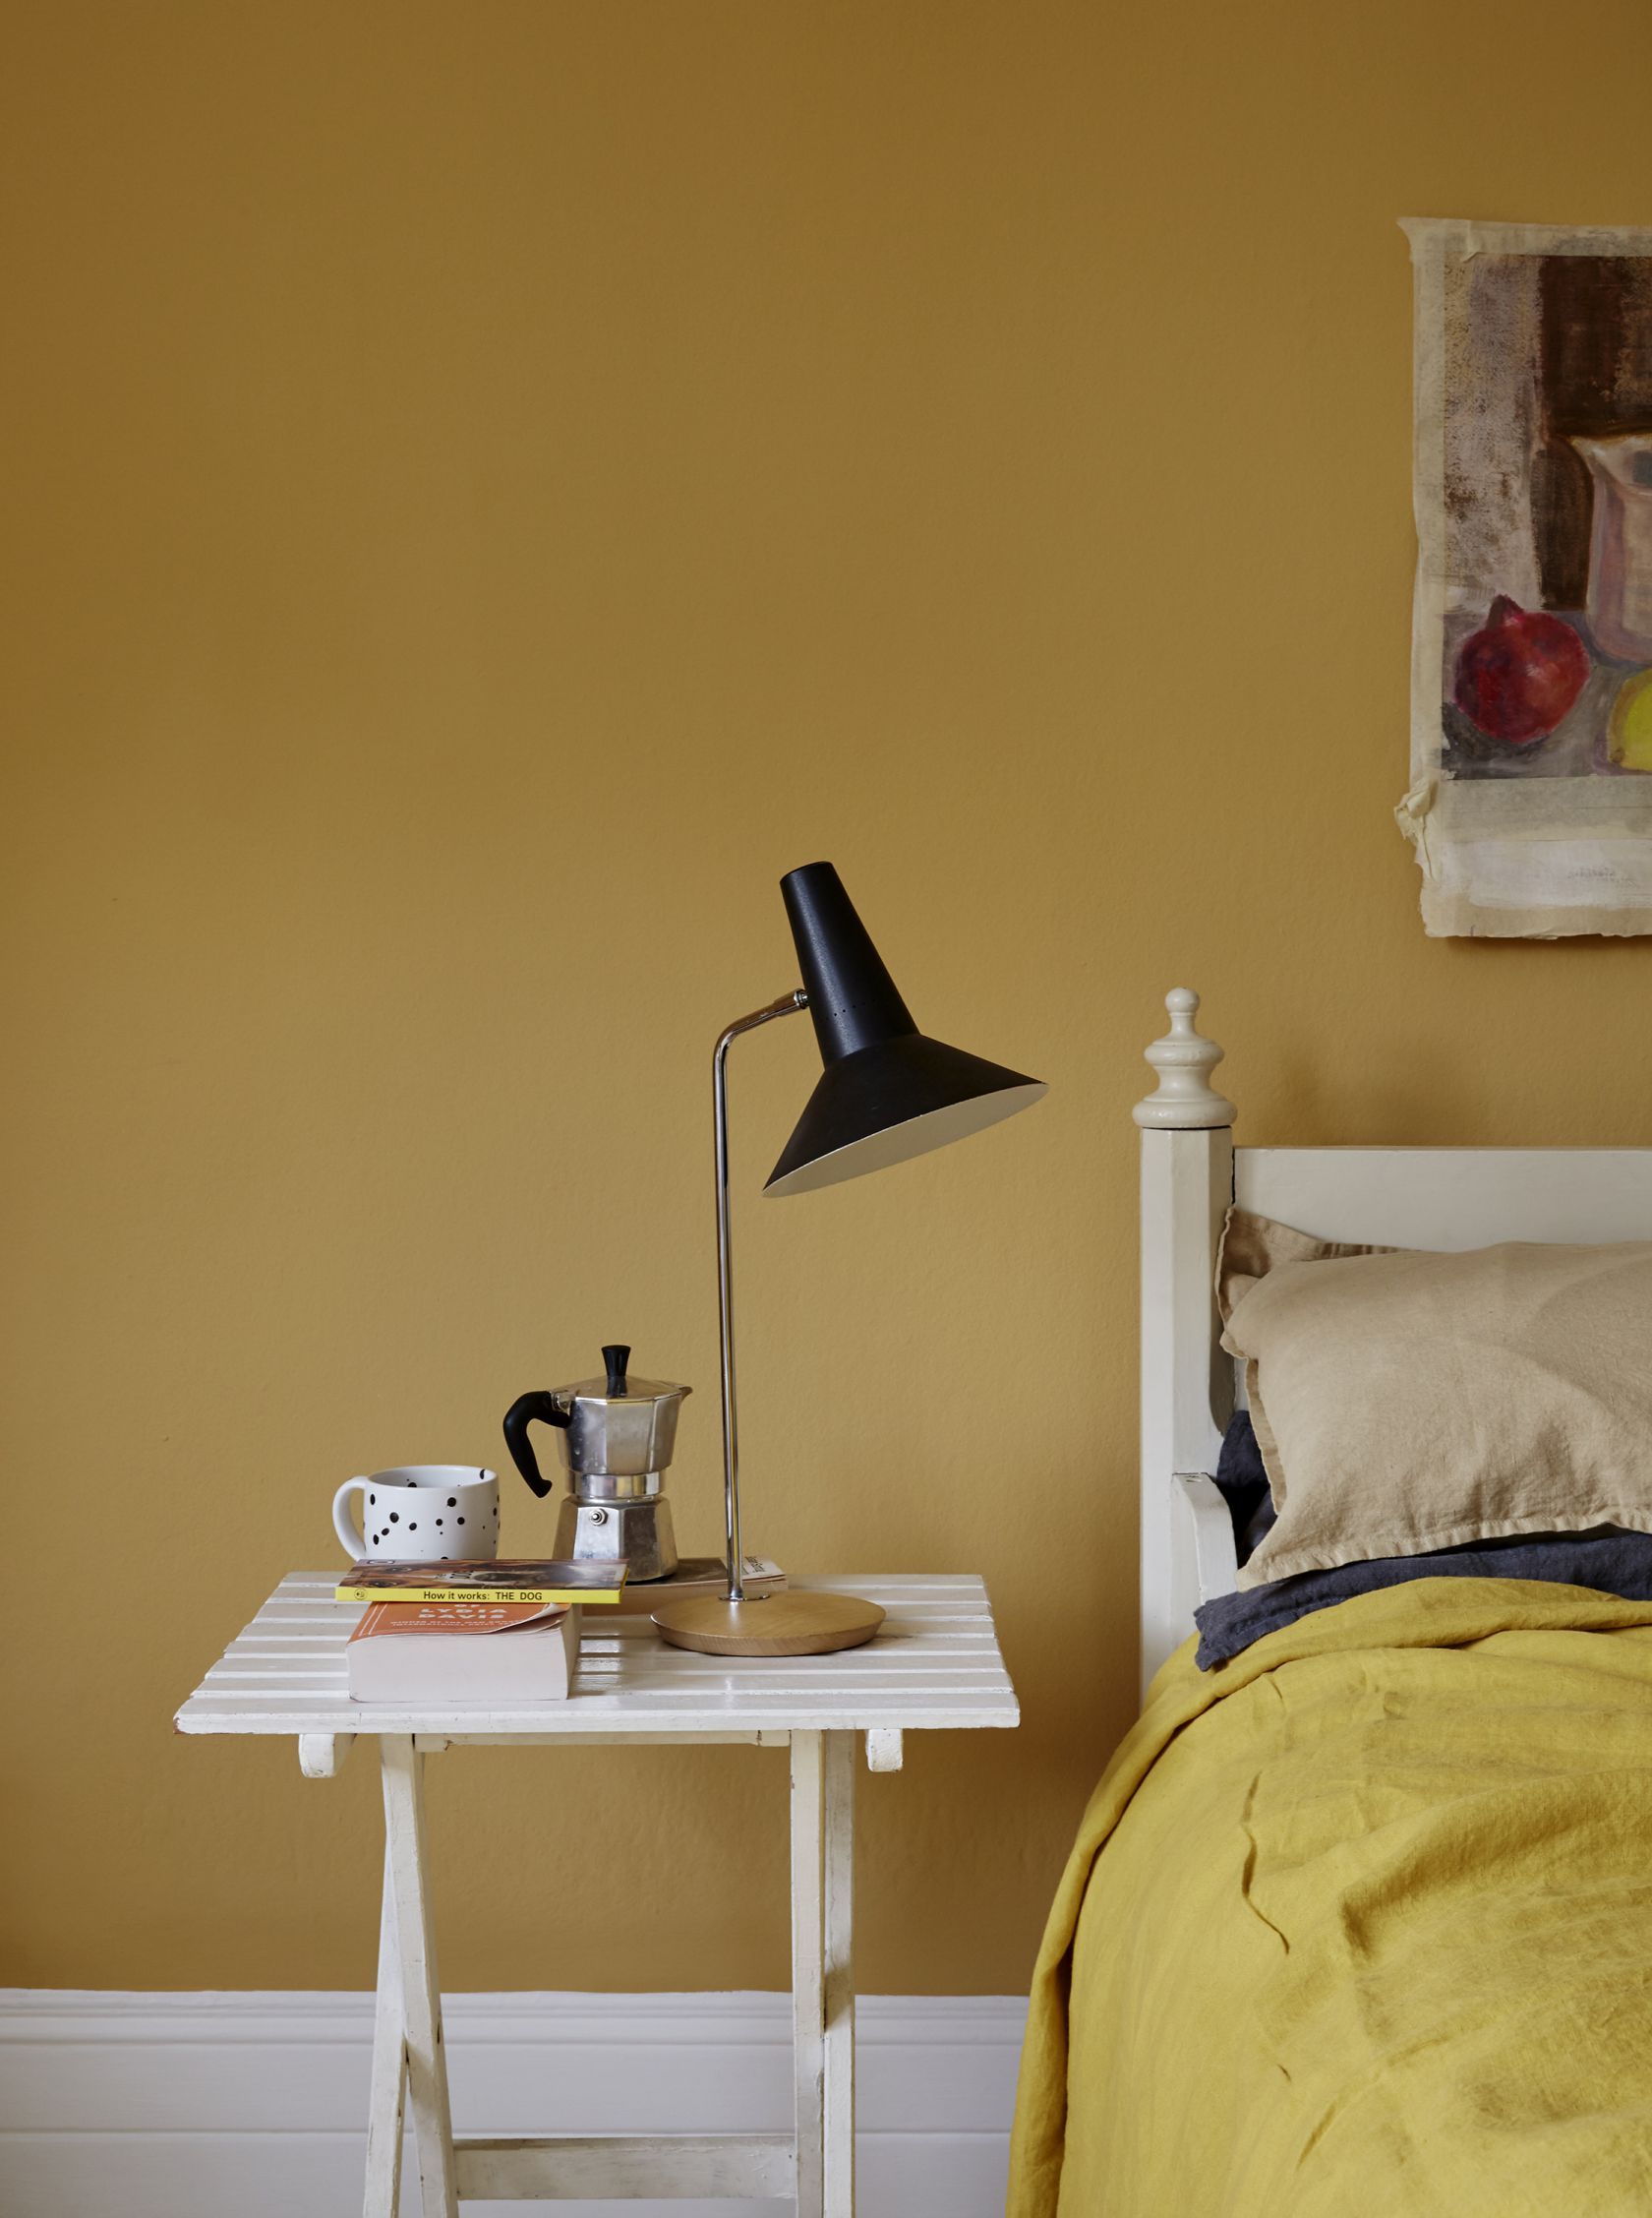 Benjamin Moore Traditional Yellow Bedroom Walls